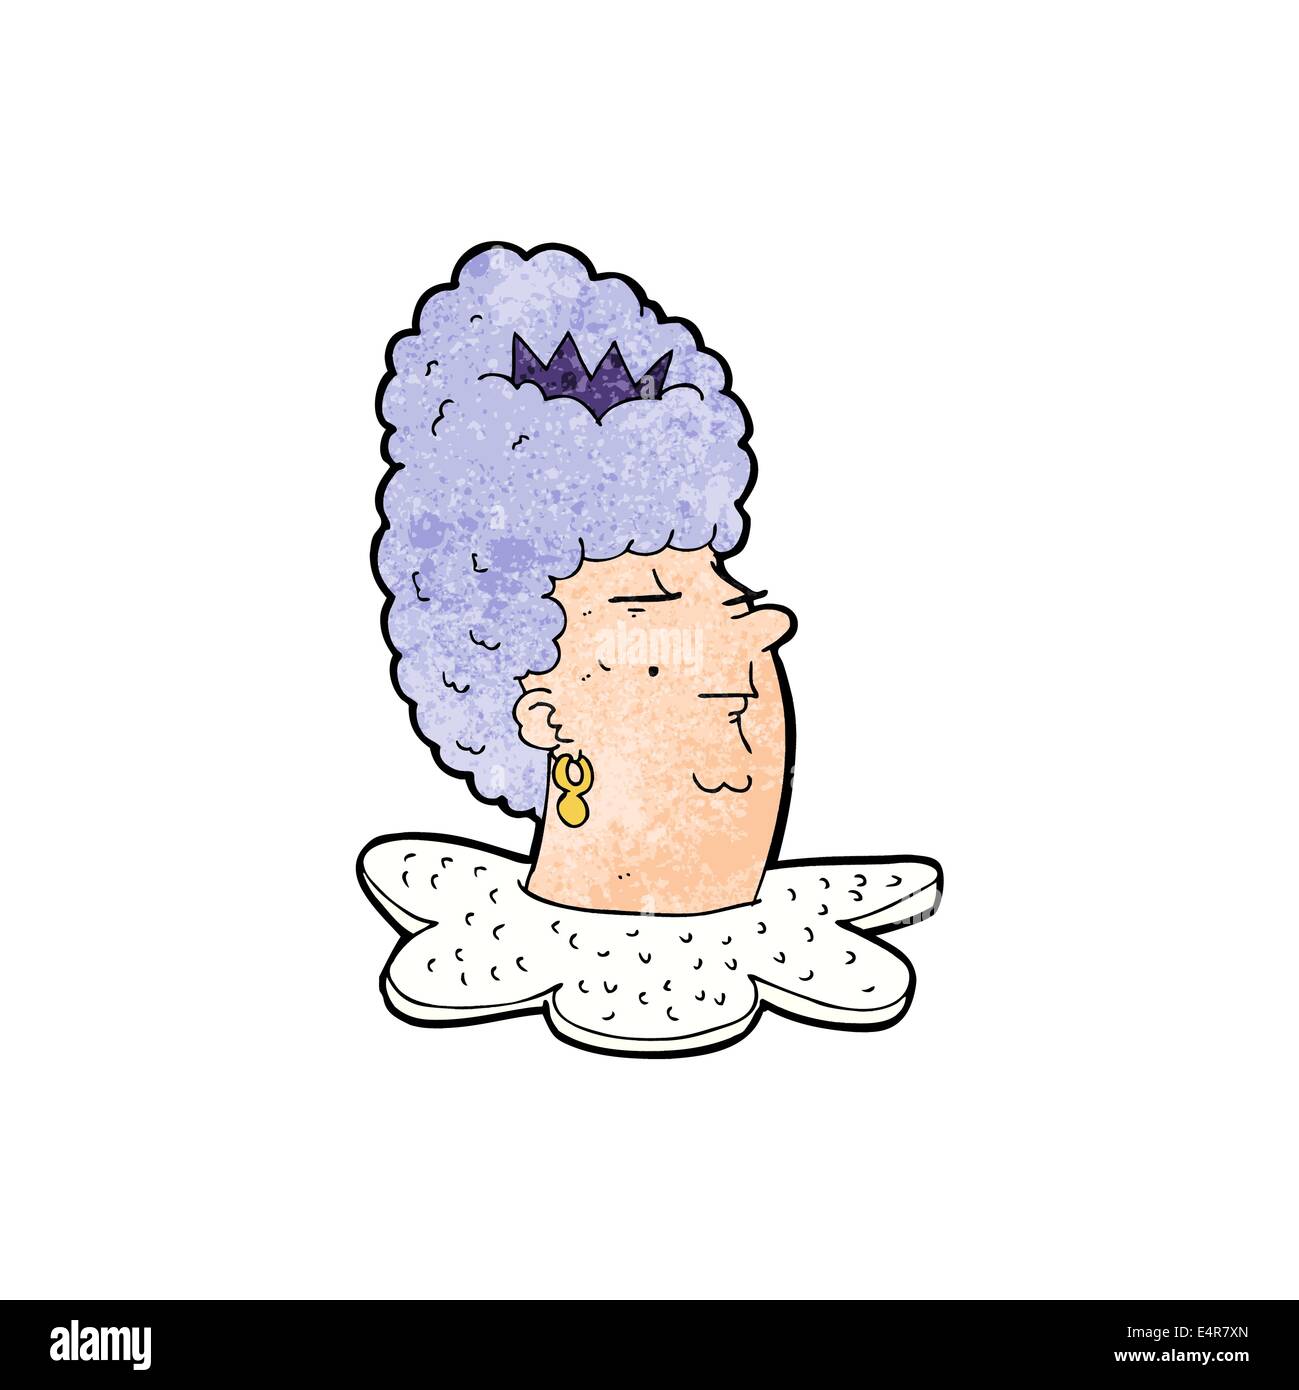 cartoon queen's head Stock Vector Image & Art - Alamy